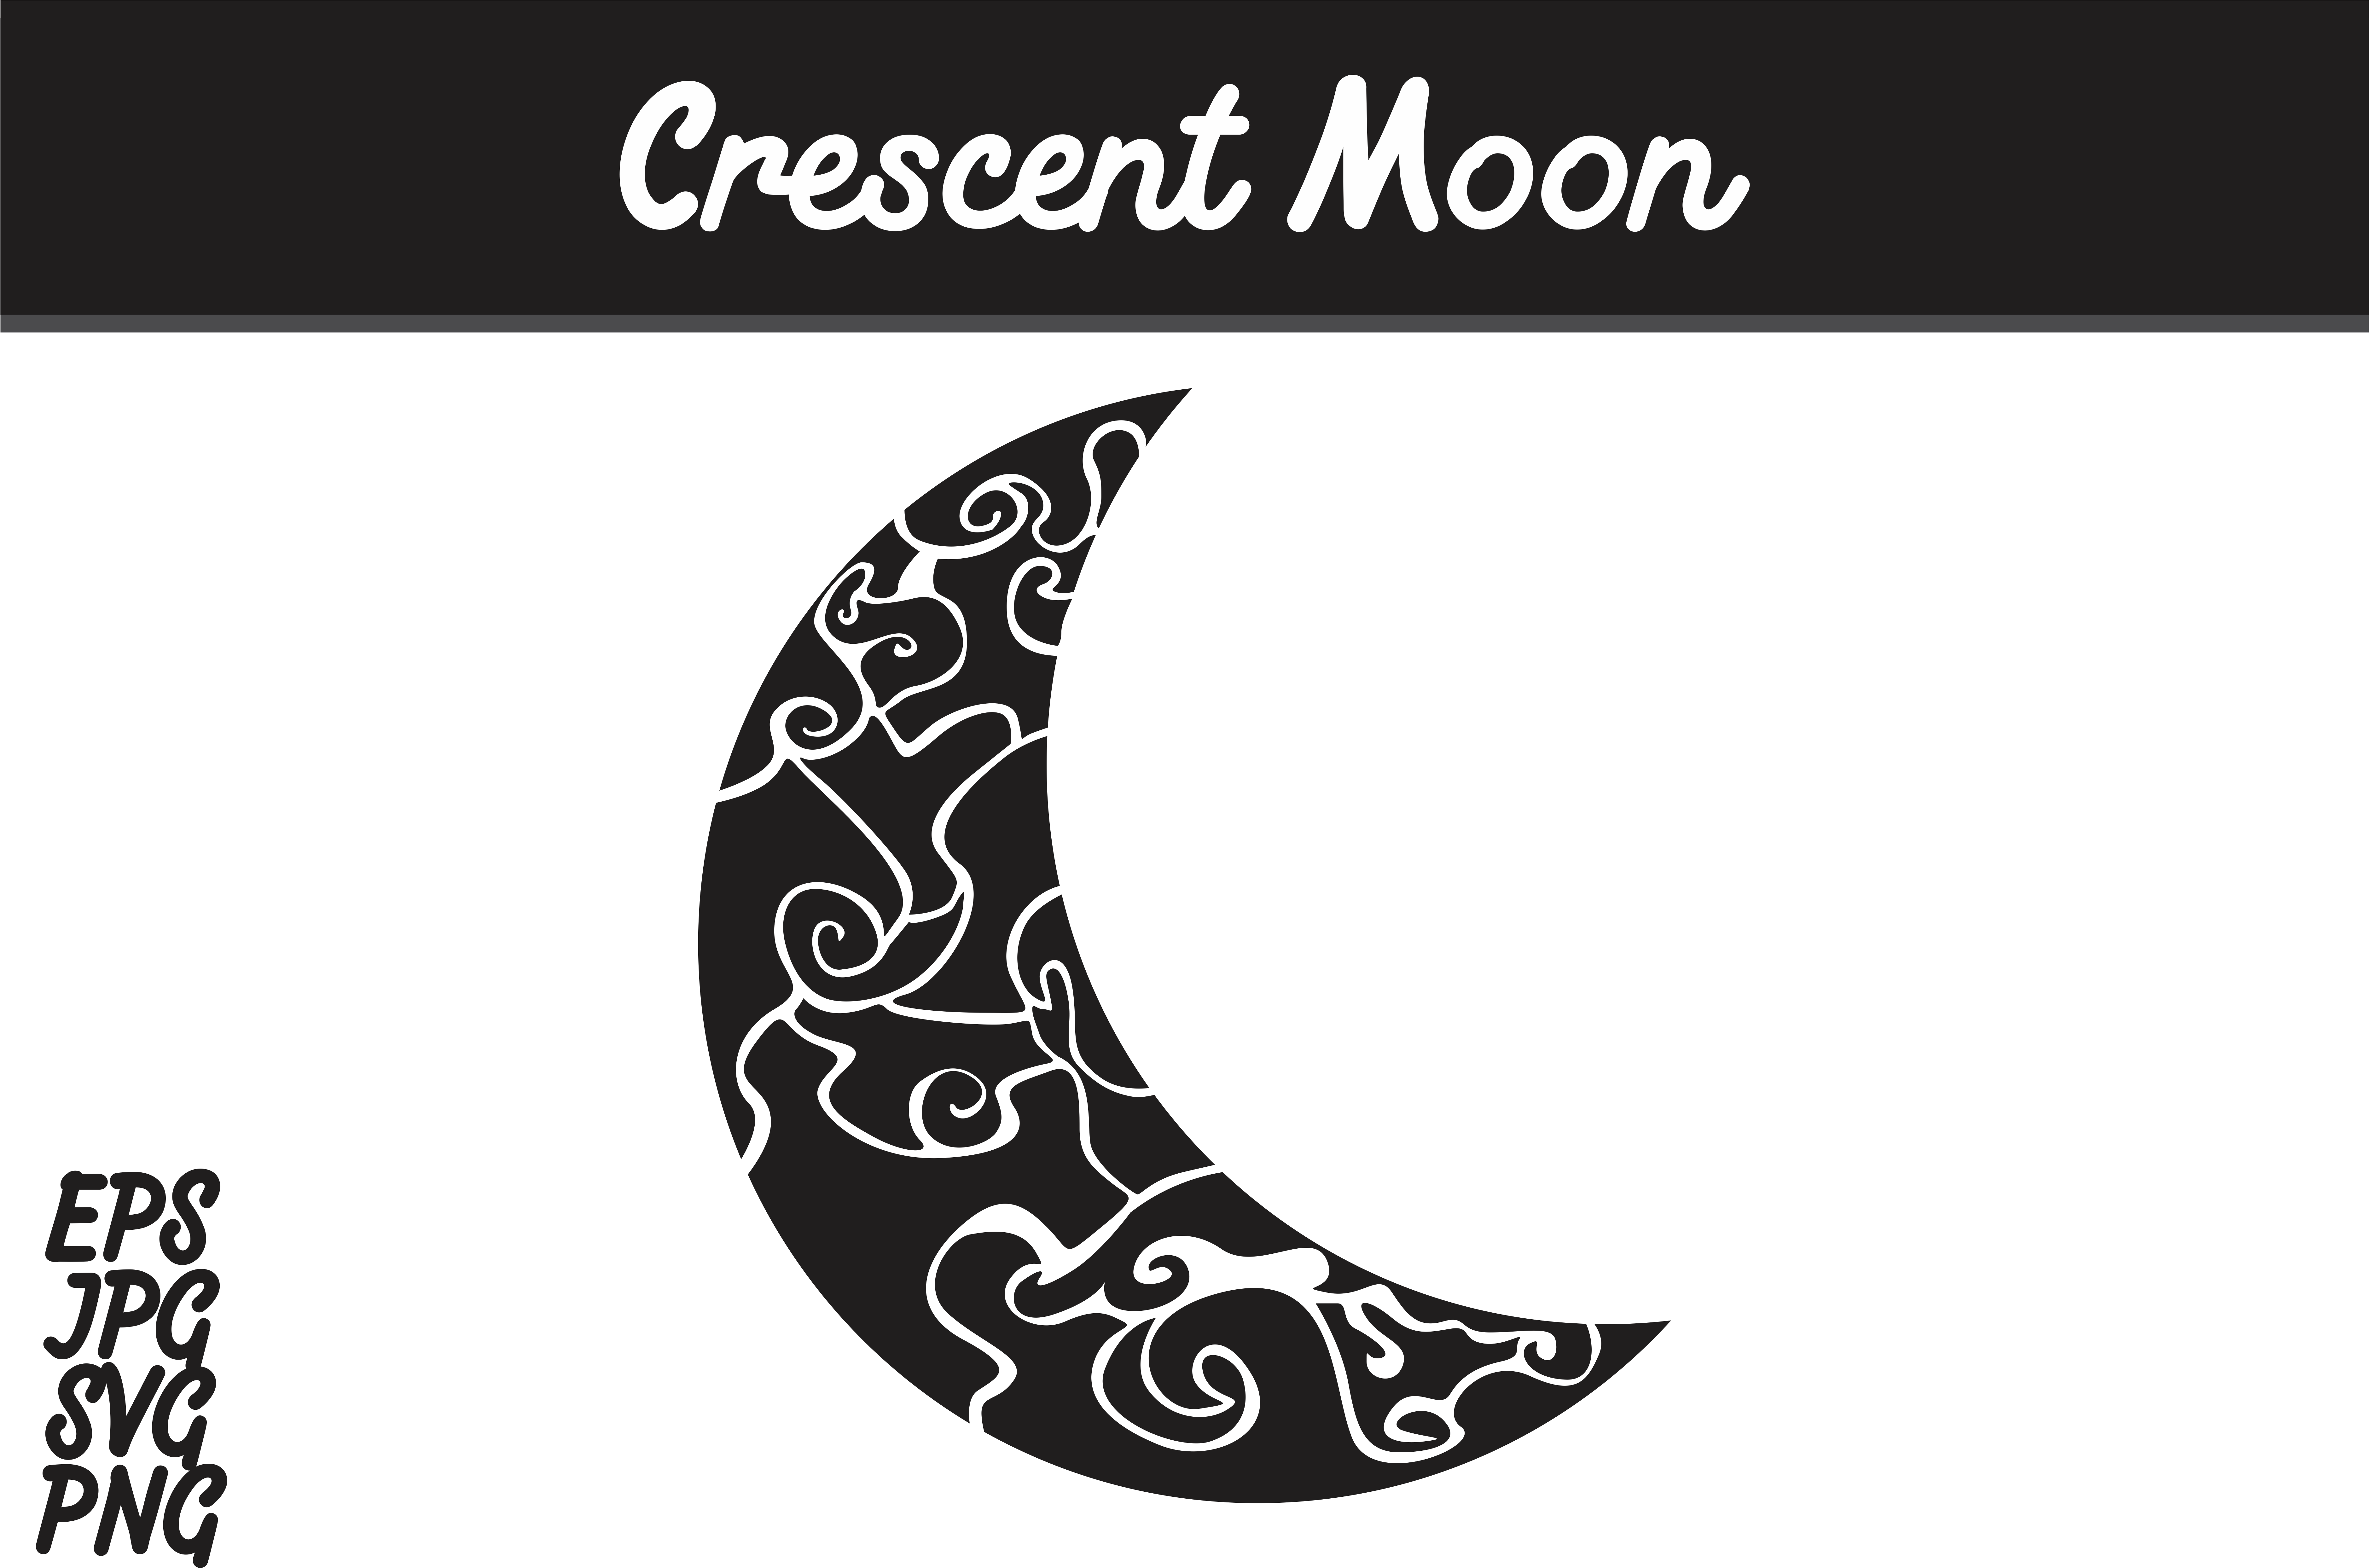 Crescent Moon Svg Vector Image Graphic By Arief Sapta - Batik Mega Mendung Vector Png Clipart (7514x5000), Png Download